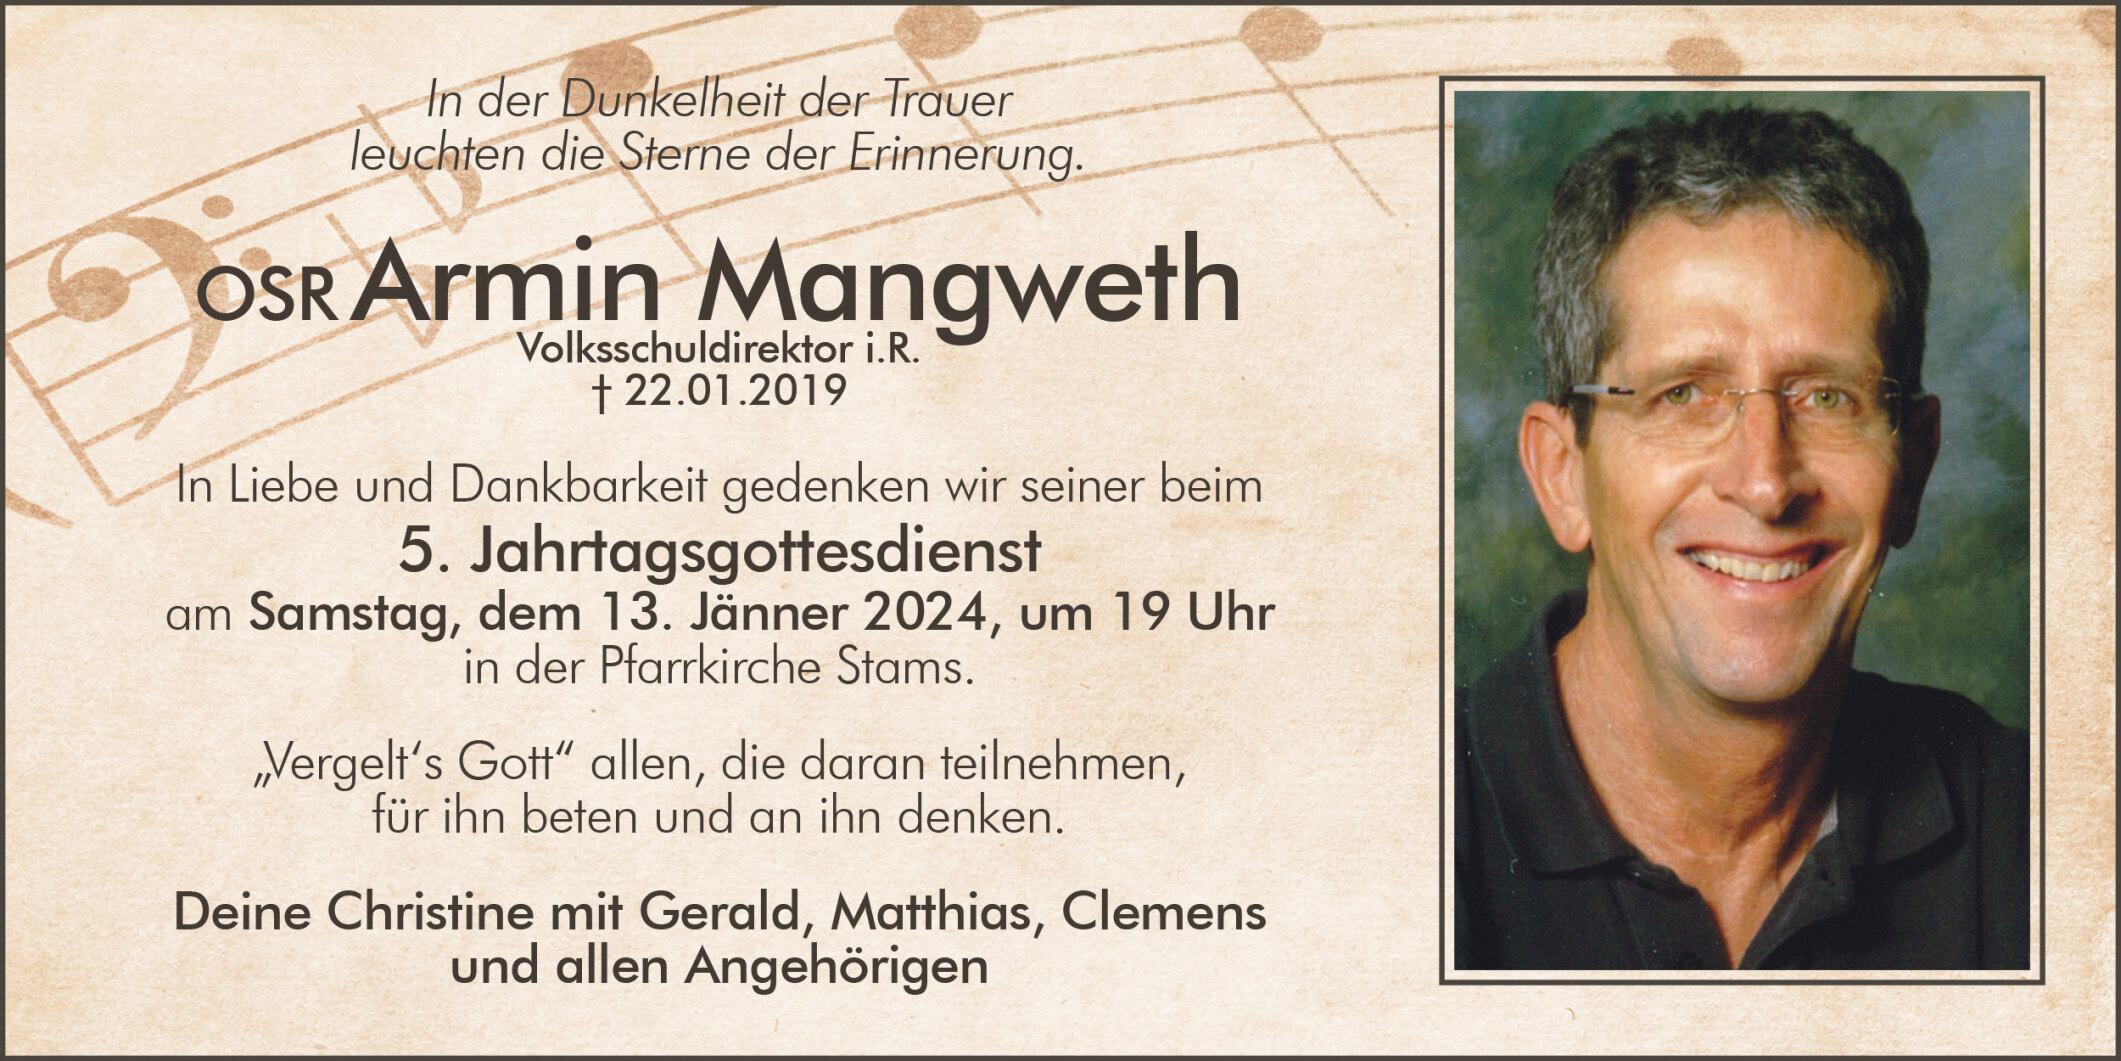 Armin Mangweth